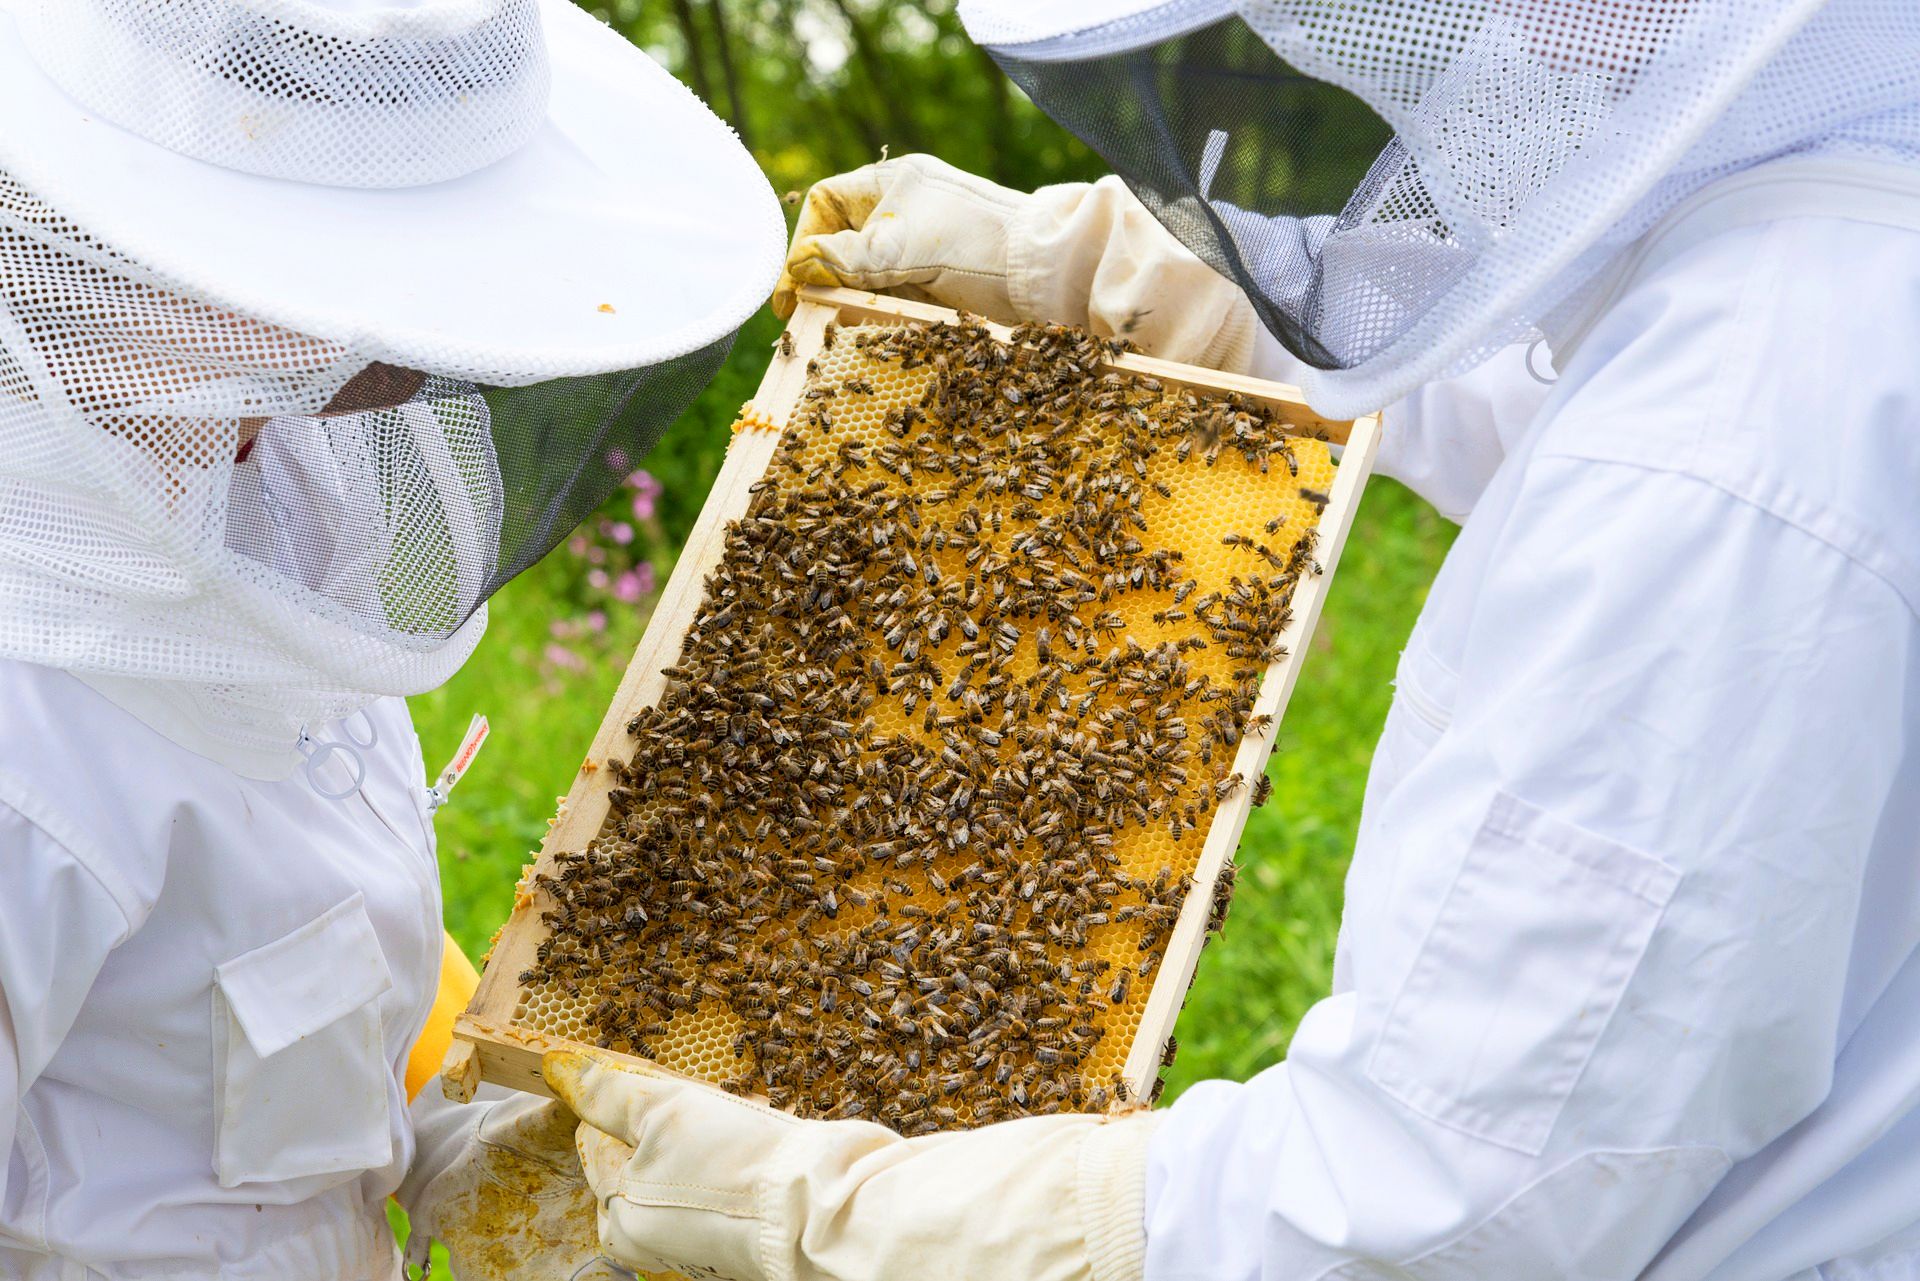 80 proc. wszystkiego co jemy zawdzięczamy pszczołom w pośredni bądź bezpośredni sposób. Dlatego należy chronić pszczoły - powiedział Piotr Mrówka, prezes Stowarzyszenia Pszczelarzy Zawodowych